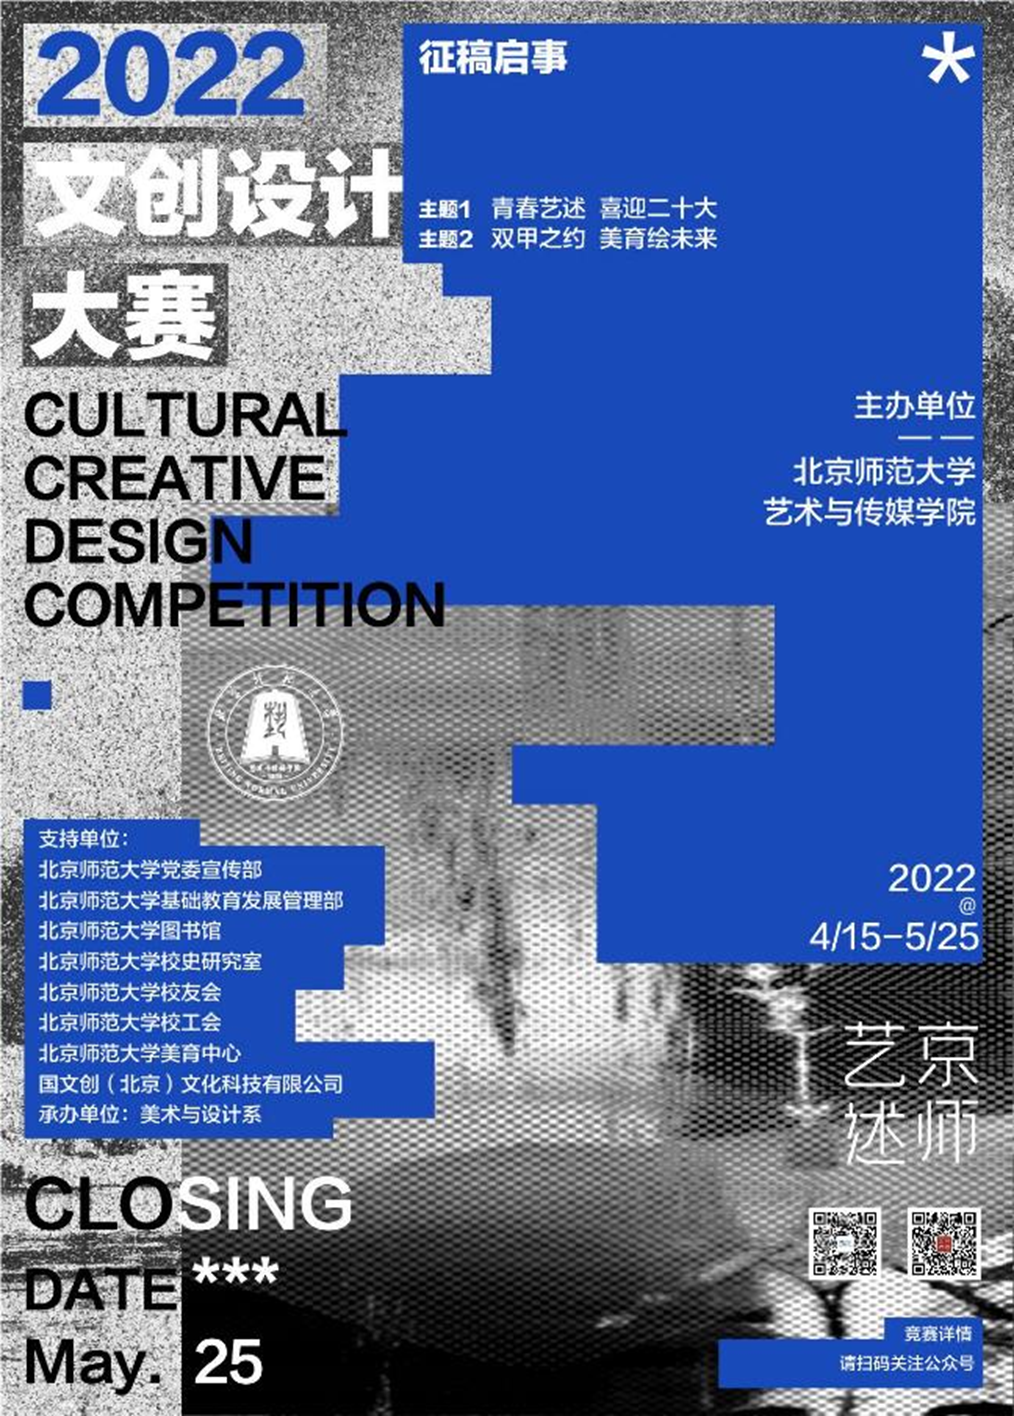 [设计比赛] 京师艺述2022文创设计大赛征稿启事 @ 截至2022.5.25